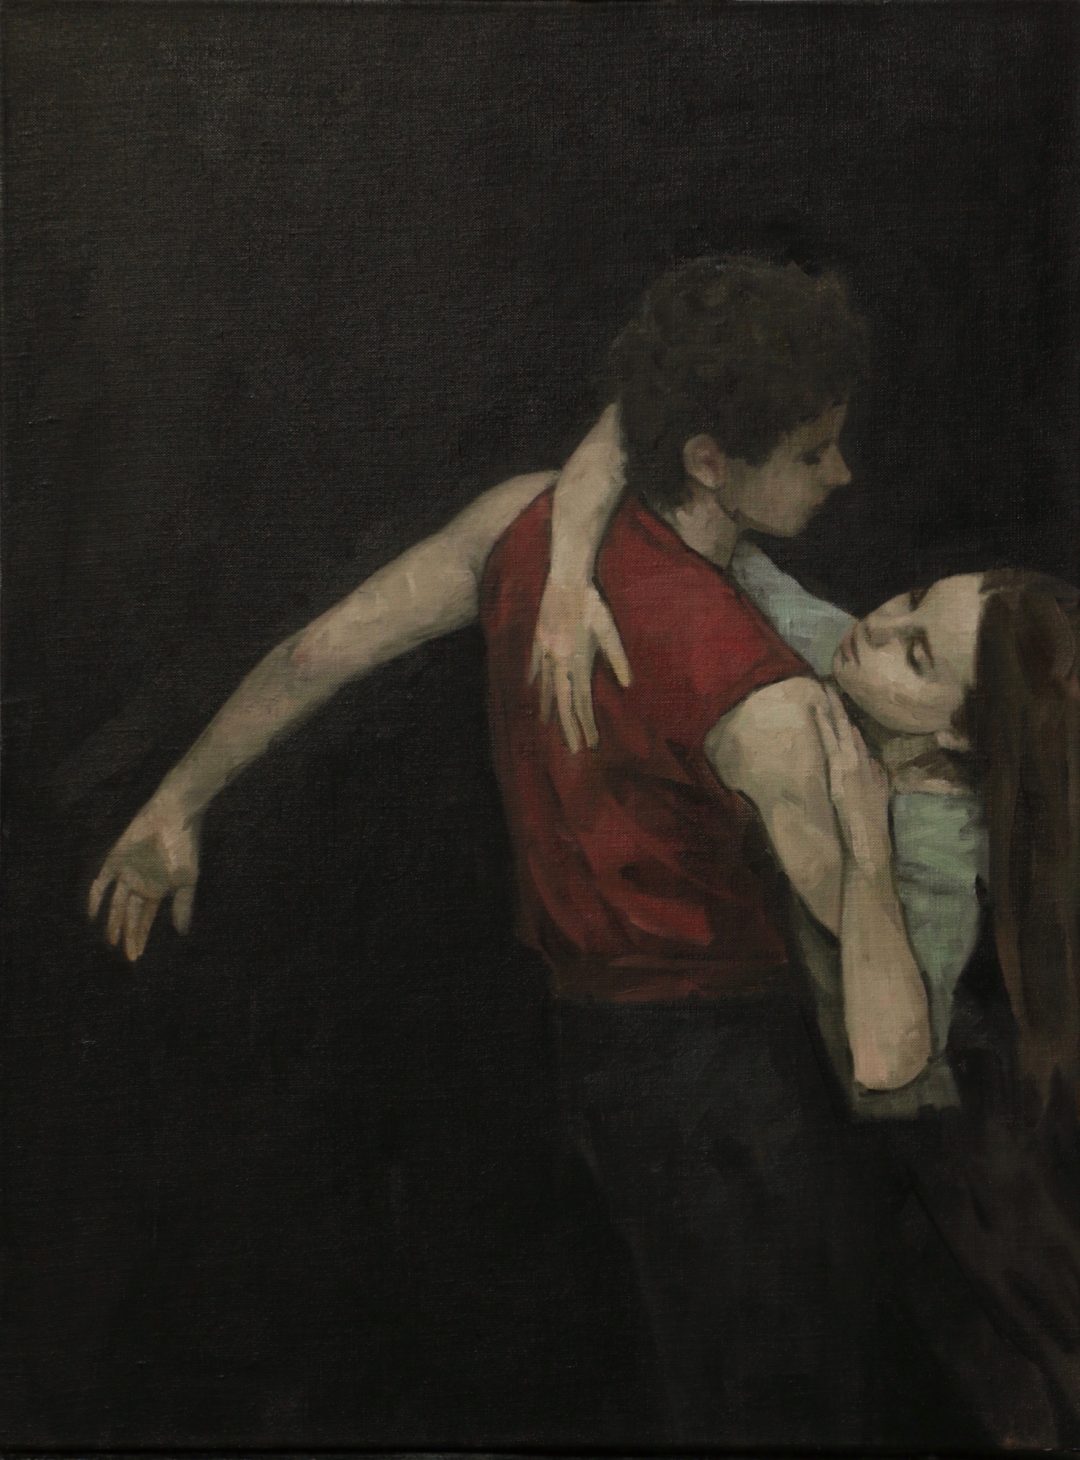 'Anna Pujol and Andrea Battaggia 5' Carl Chapple Oil on canvas, 46cm x 61cm, 2017